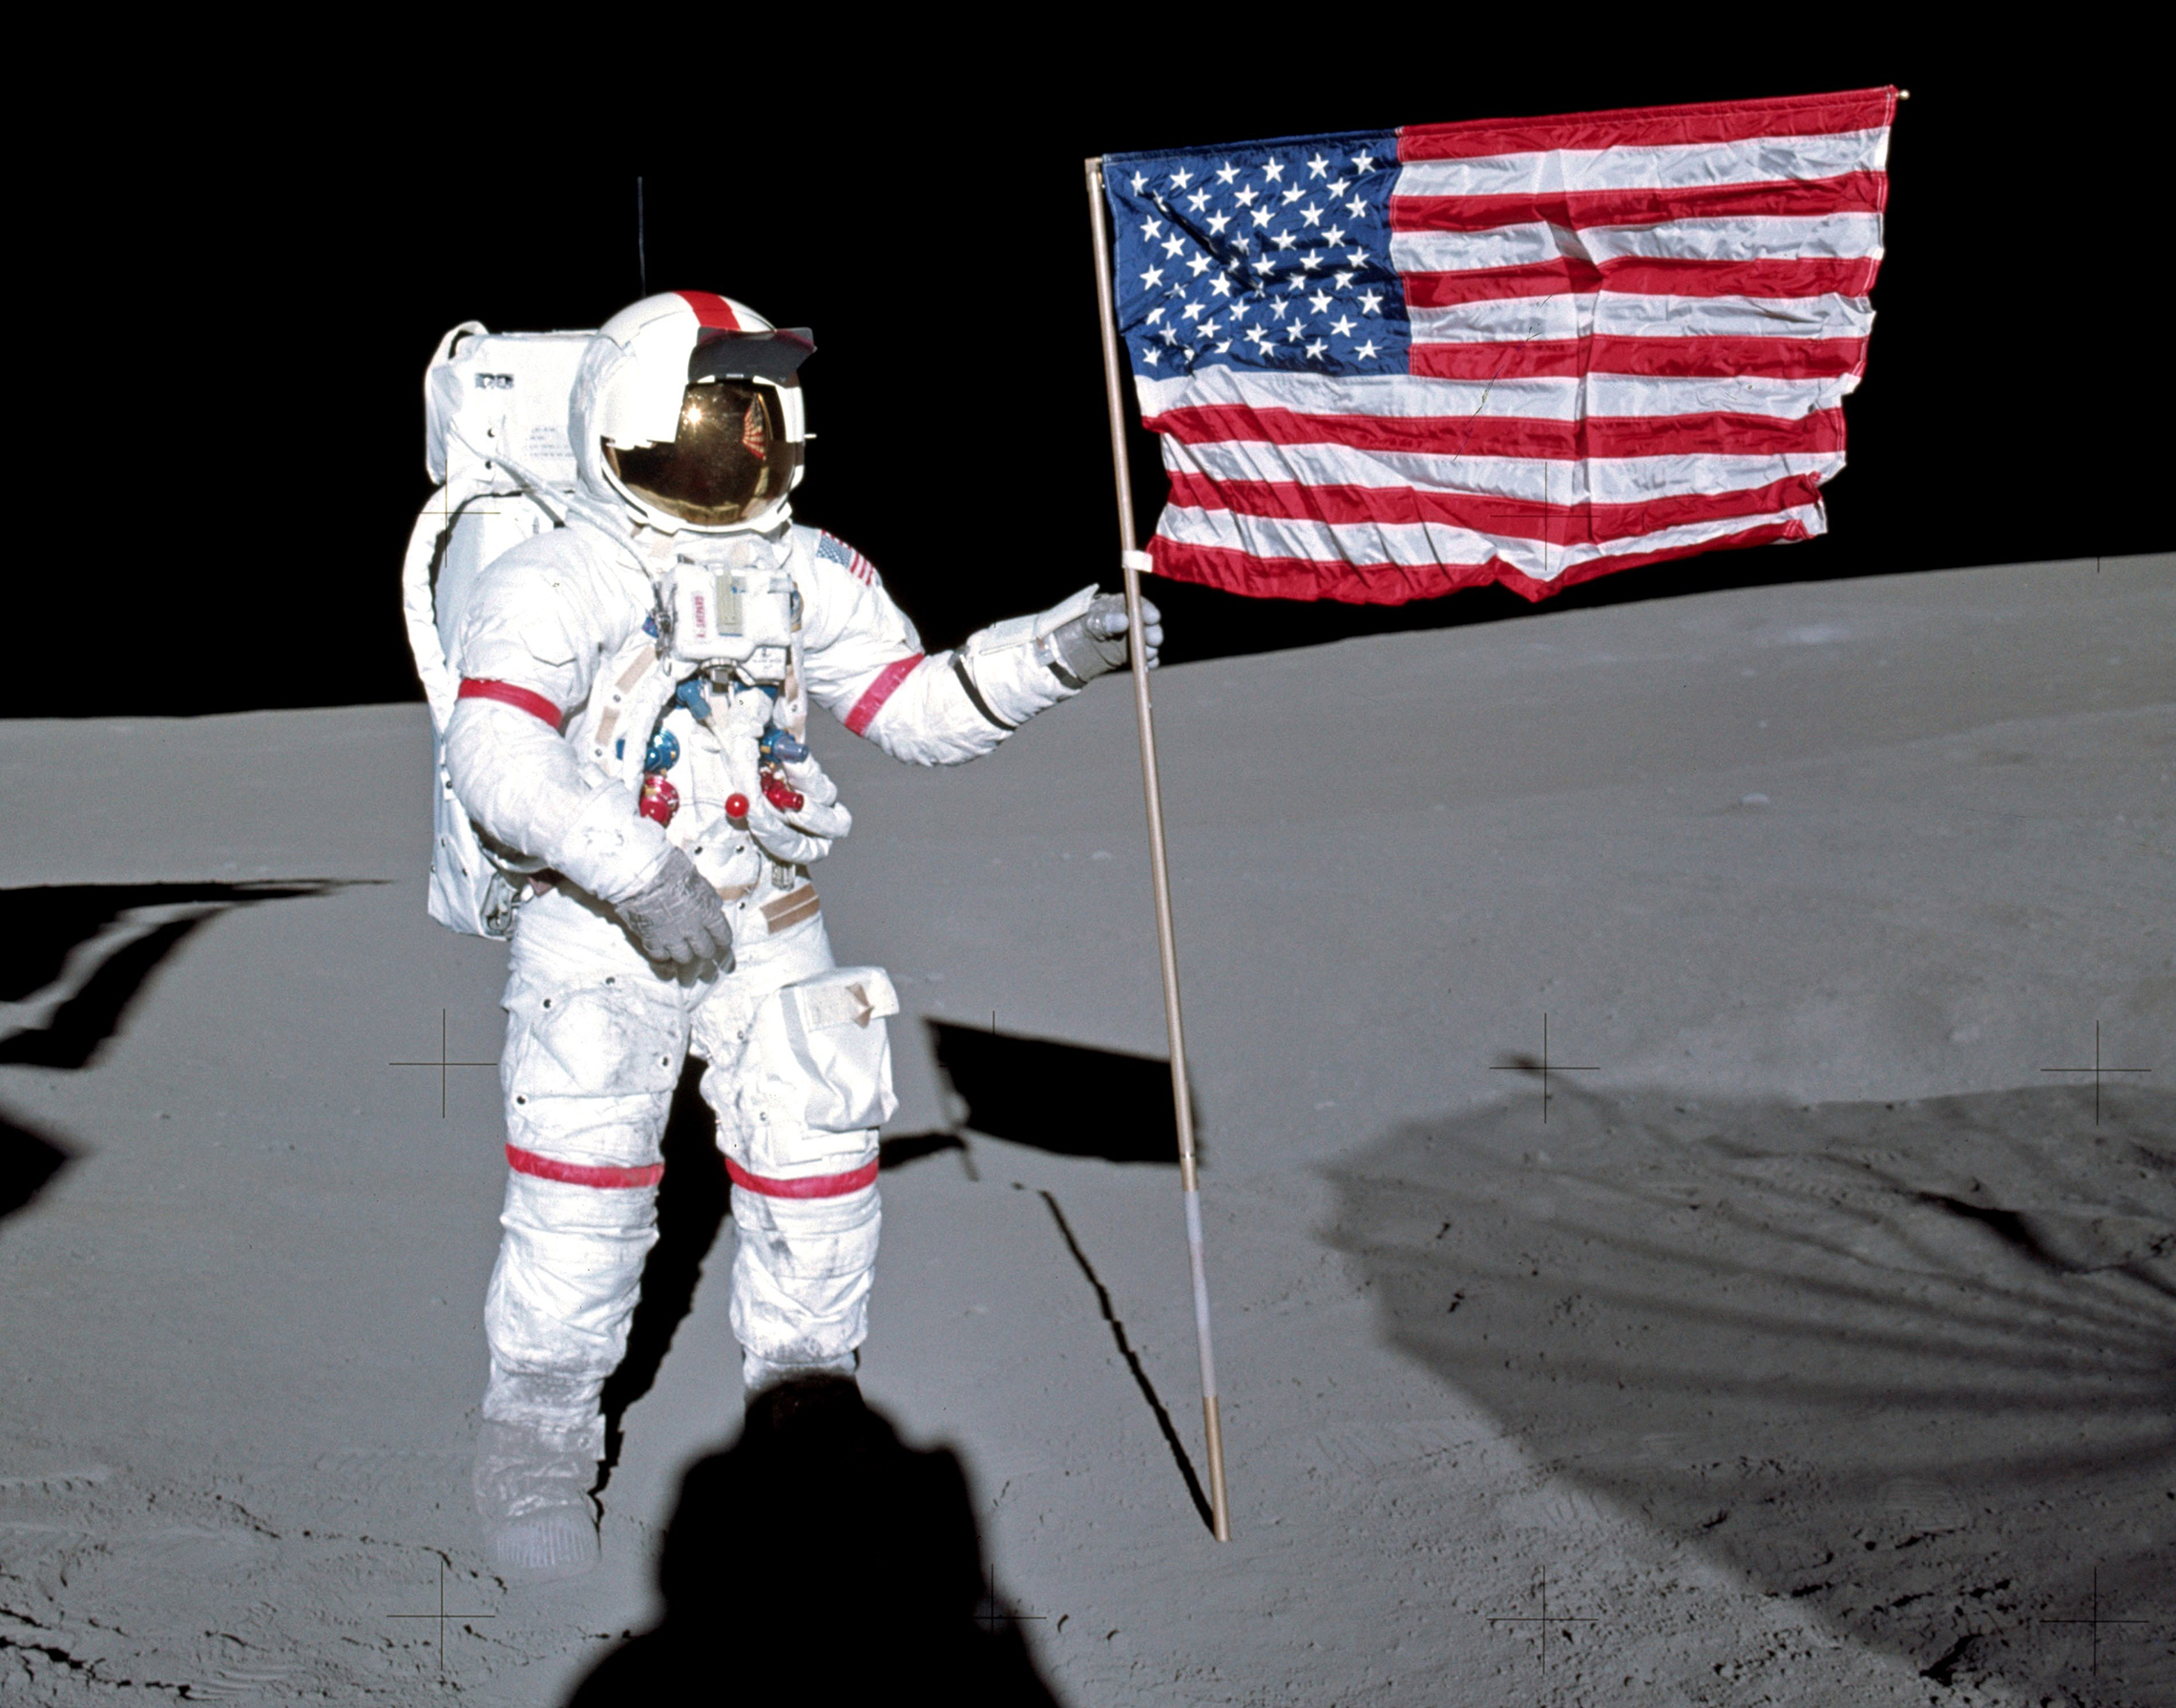 Alan Shepard pflanzt die amerikanische Flagge auf den Mond.5. Februar 1971: Astronaut Alan B. Shepard Jr., Kommandant der Mondlandemission Apollo 14, steht in den frühen Momenten der ersten extravehikulären Aktivität der Mission an der US-Flagge auf der Mondoberfläche. Während Shepard und Astronaut Edgar D. Mitchell, der Mondmodulpilot, den Mond erforschten, manövrierte Astronaut Stuart A. Roosa, Kommandomodulpilot, das Kommandodienstmodul in der Mondumlaufbahn. (NASA Photo)